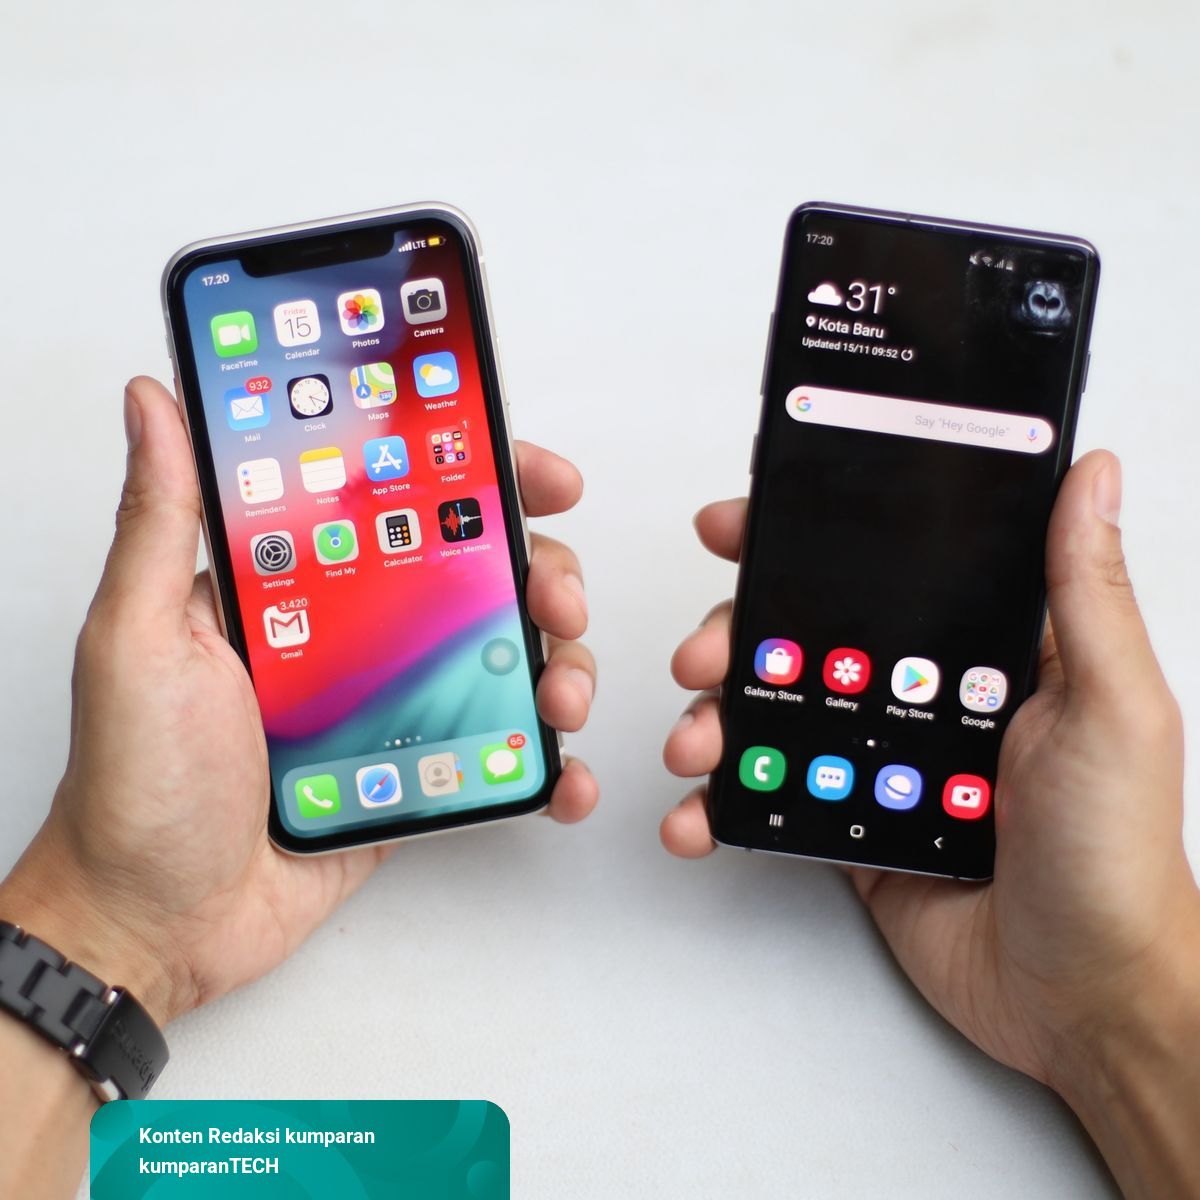 Erafone Beri Diskon HP Samsung hingga iPhone Selama Seminggu, Ini Harganya  | kumparan.com